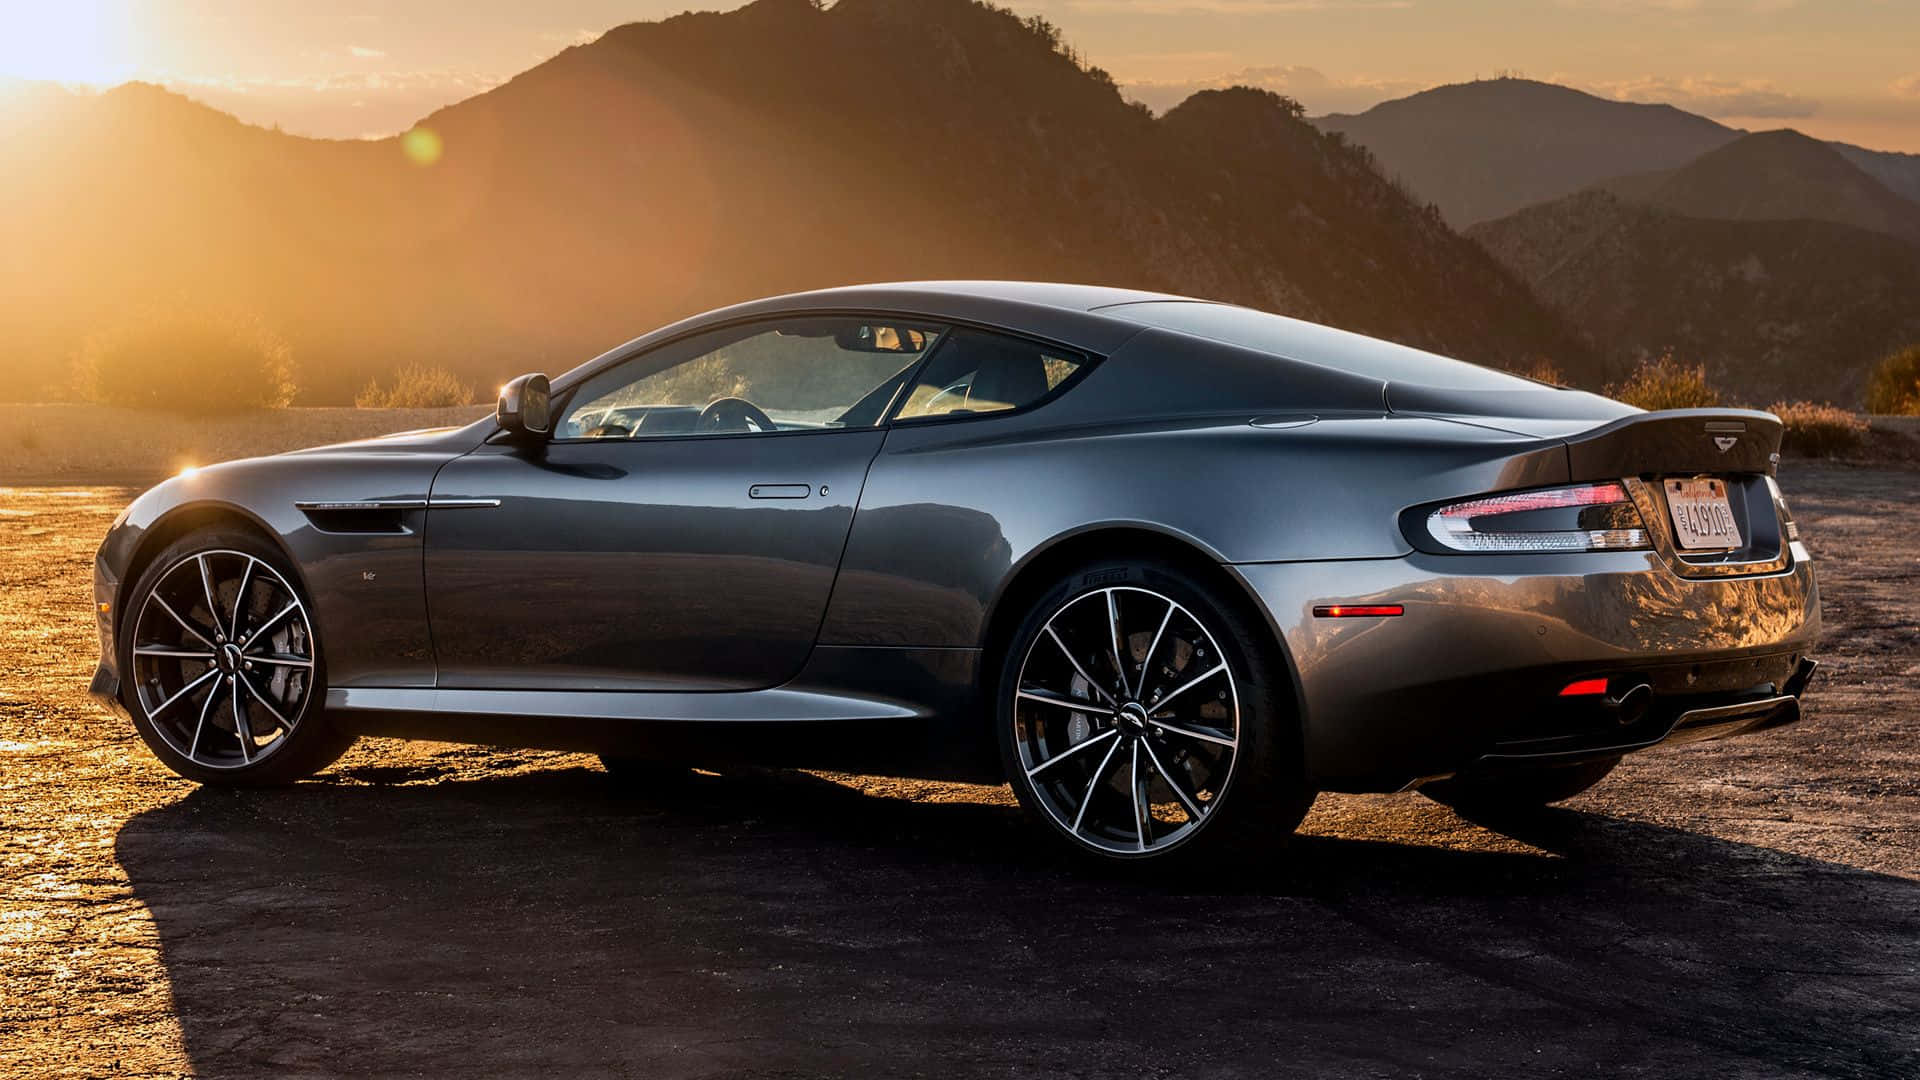 Fondode Pantalla: Aston Martin Db9 - Lujo Y Rendimiento En Exhibición. Fondo de pantalla